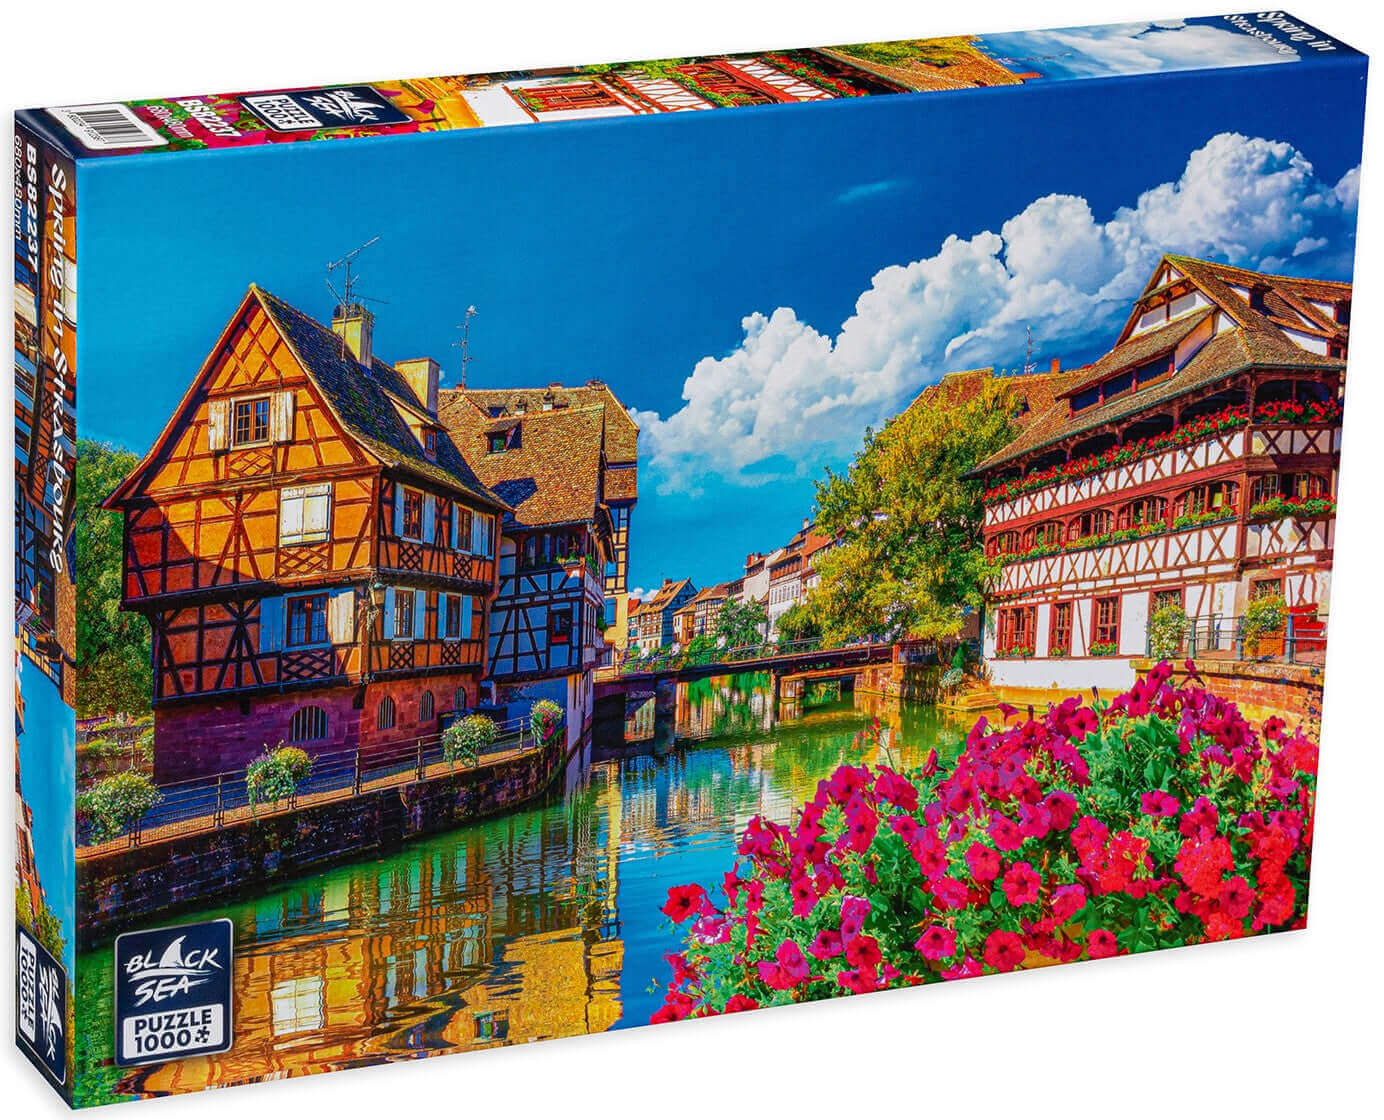 Puzzle Black Sea 1000 pieces - Spring in Strasbourg